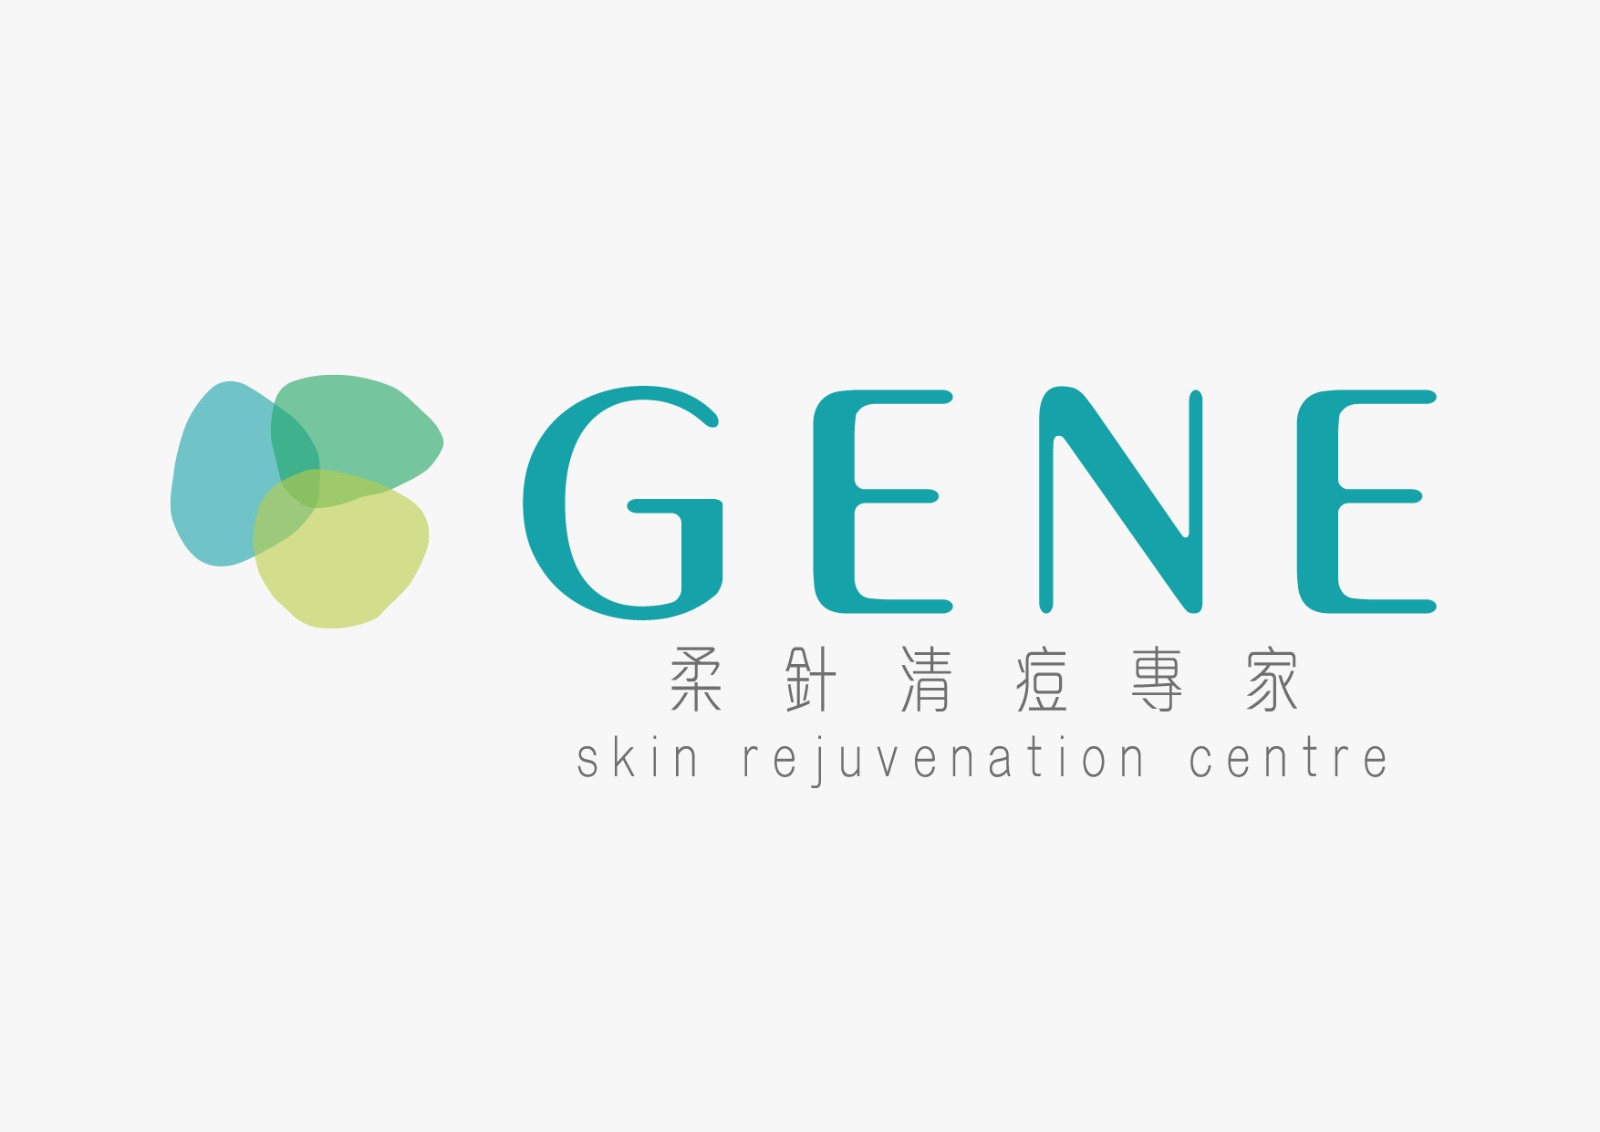 中醫外科: GENE Skin